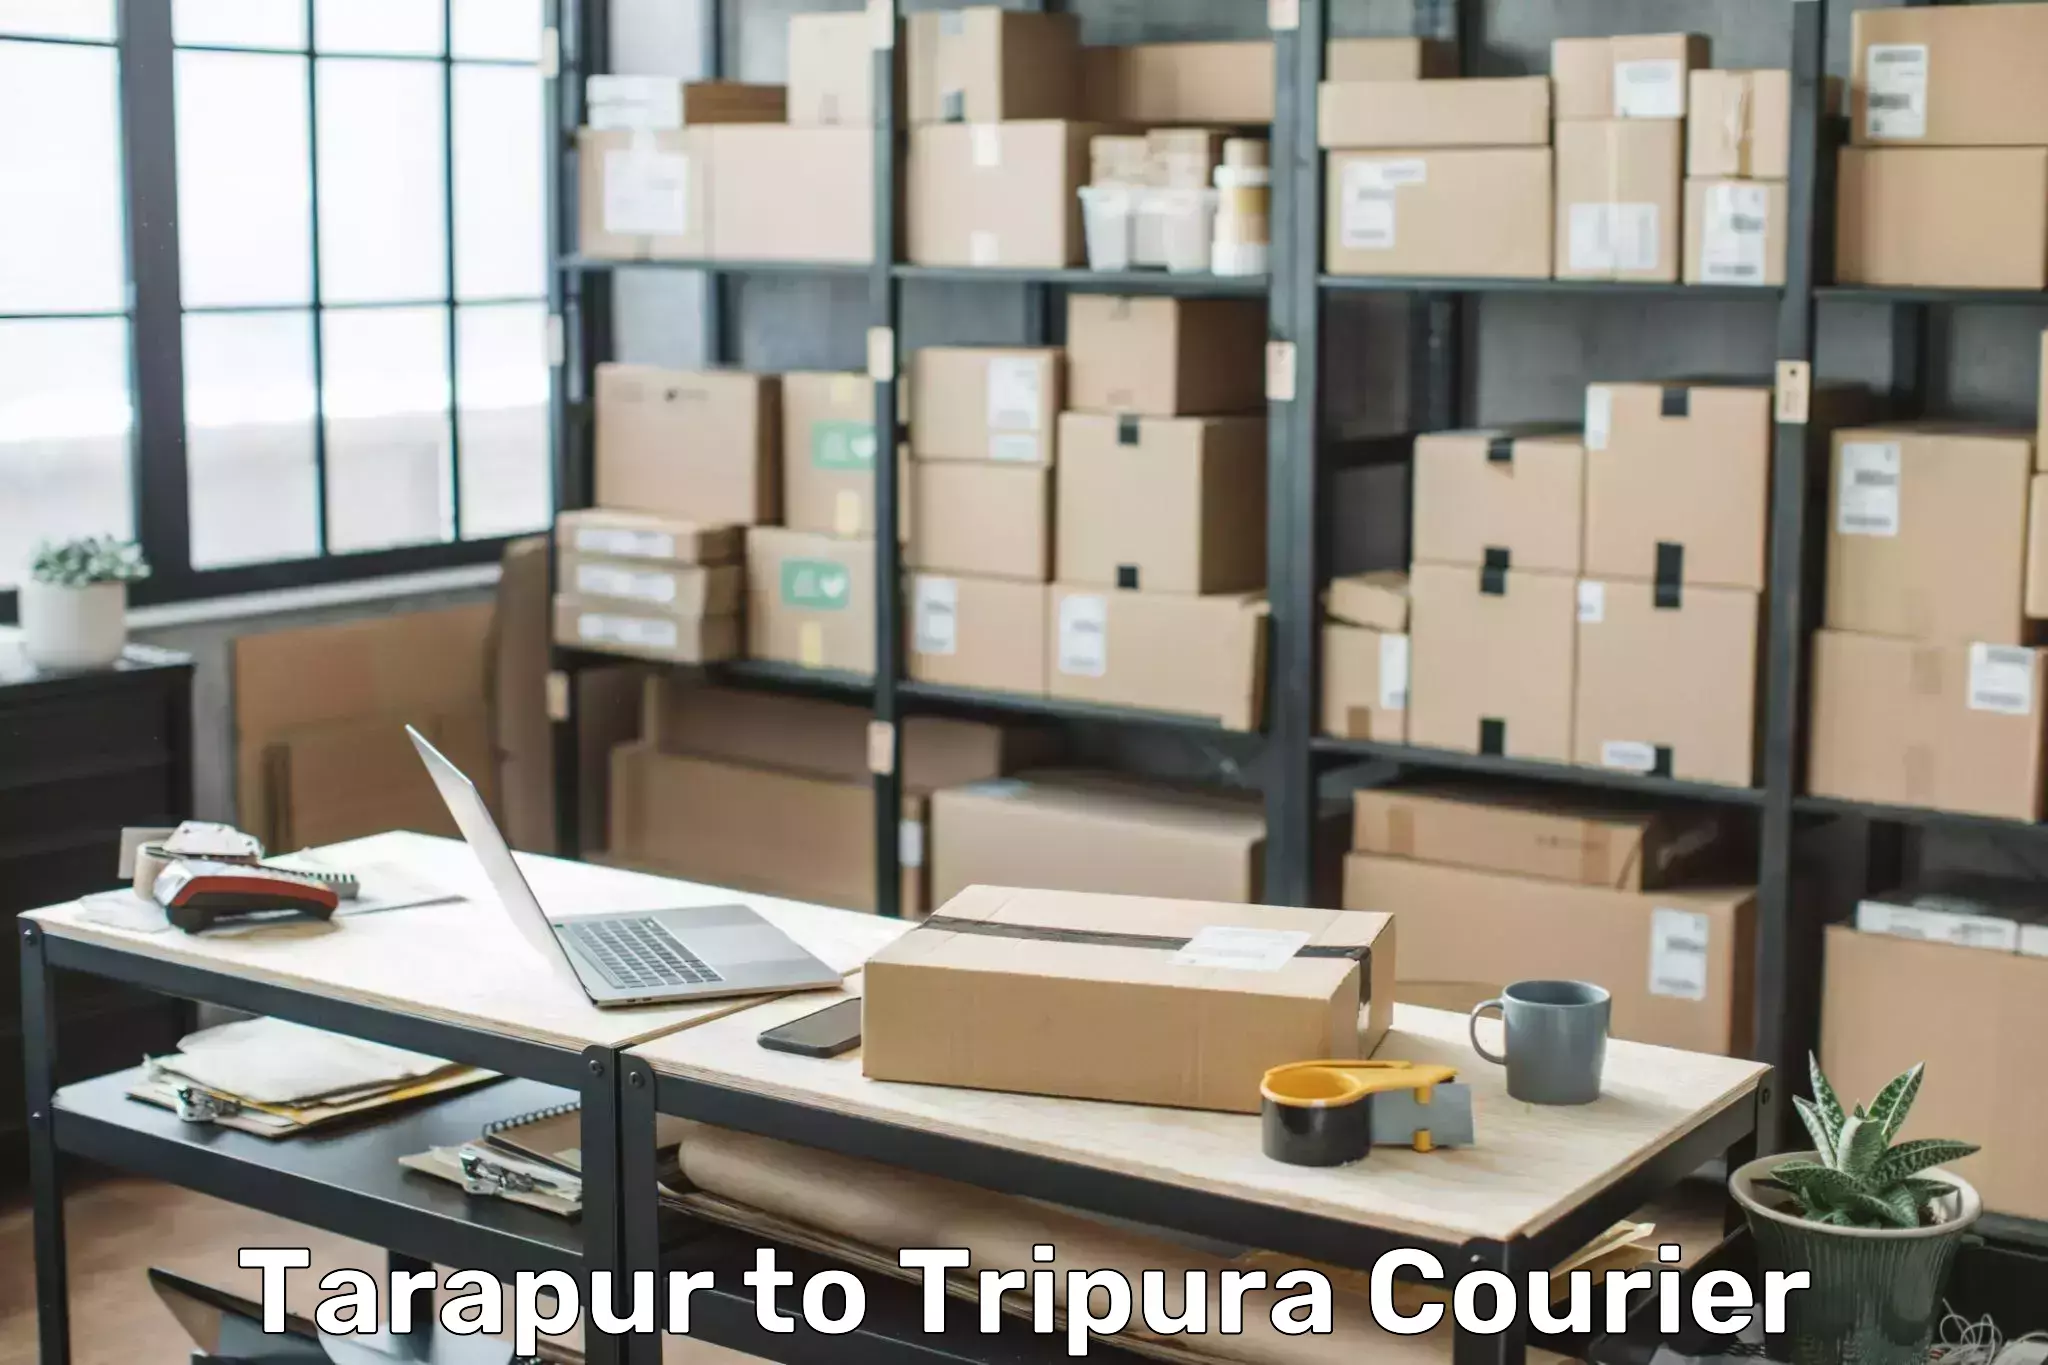 Luggage transport consultancy Tarapur to Udaipur Tripura